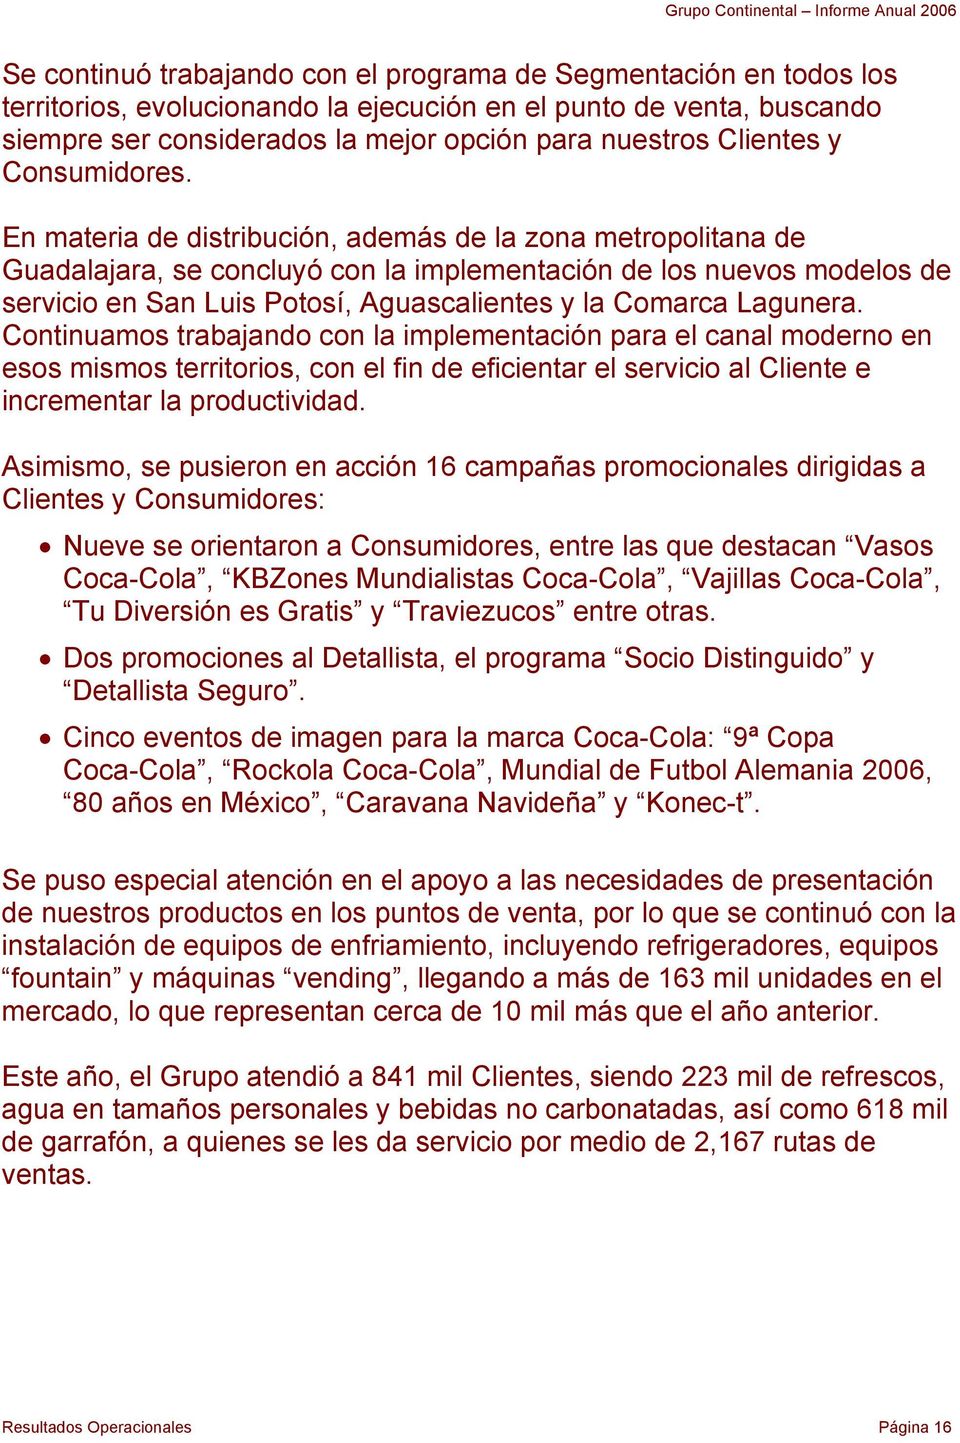 En materia de distribución, además de la zona metropolitana de Guadalajara, se concluyó con la implementación de los nuevos modelos de servicio en San Luis Potosí, Aguascalientes y la Comarca